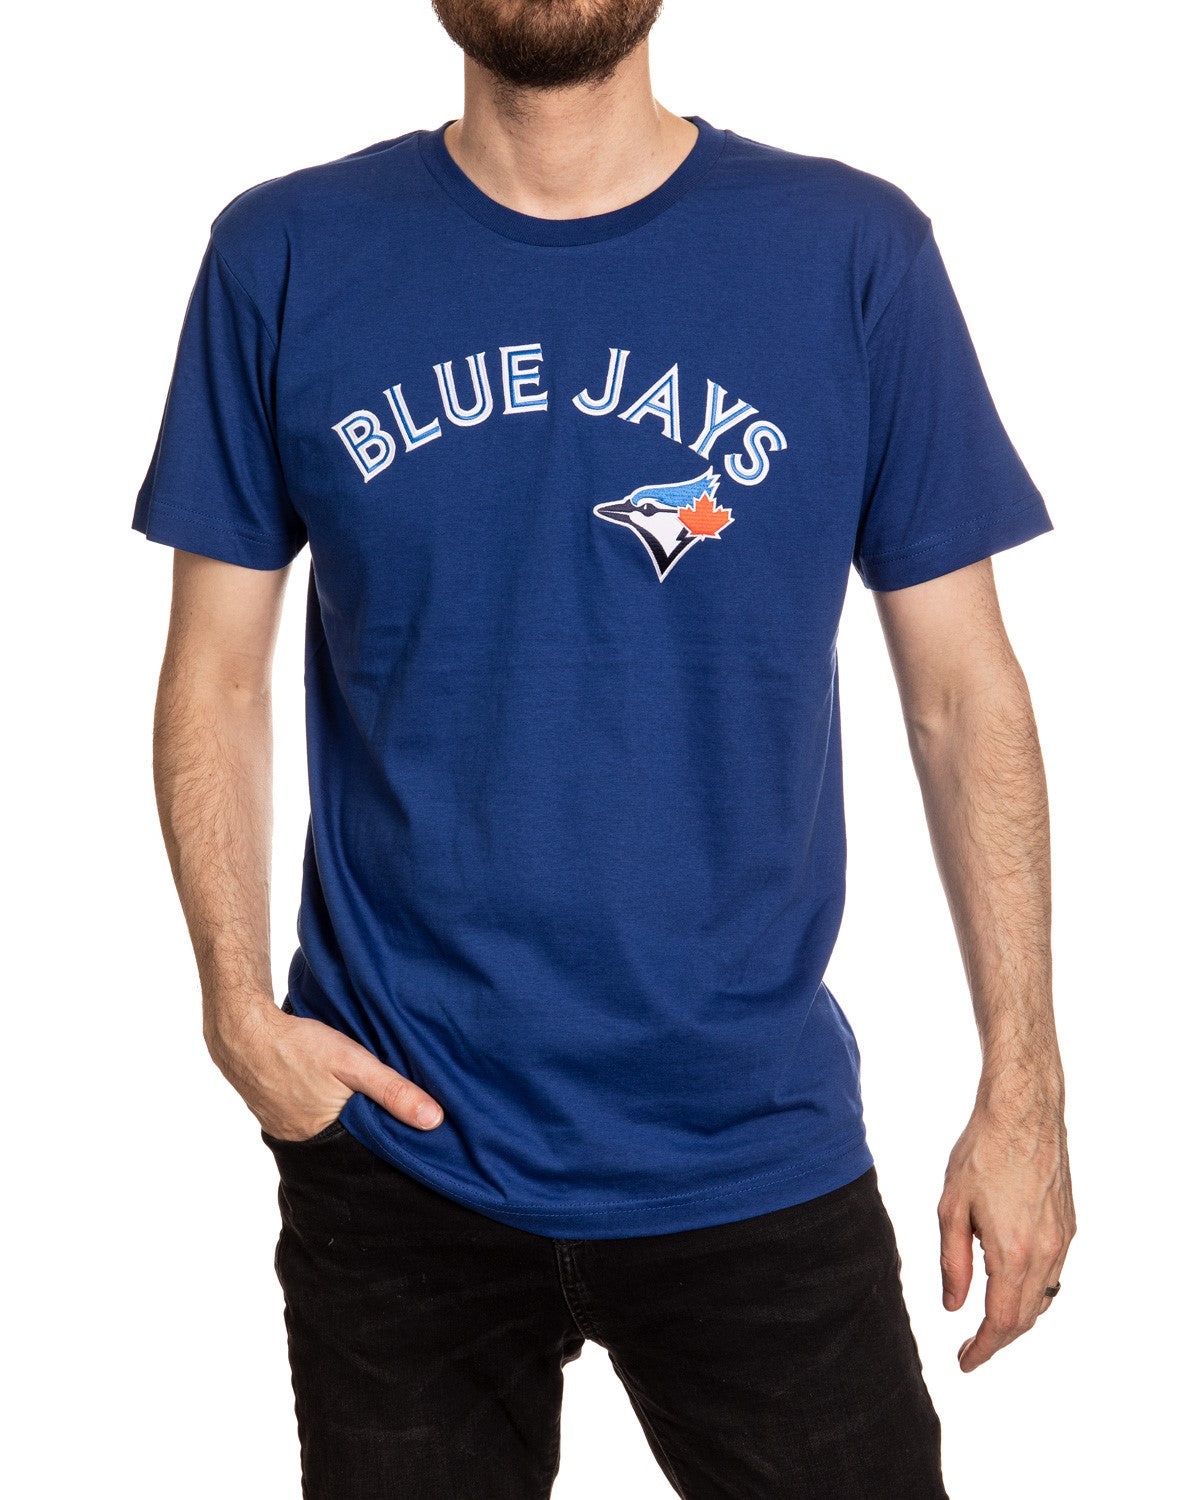 Blue Jays Shirt 